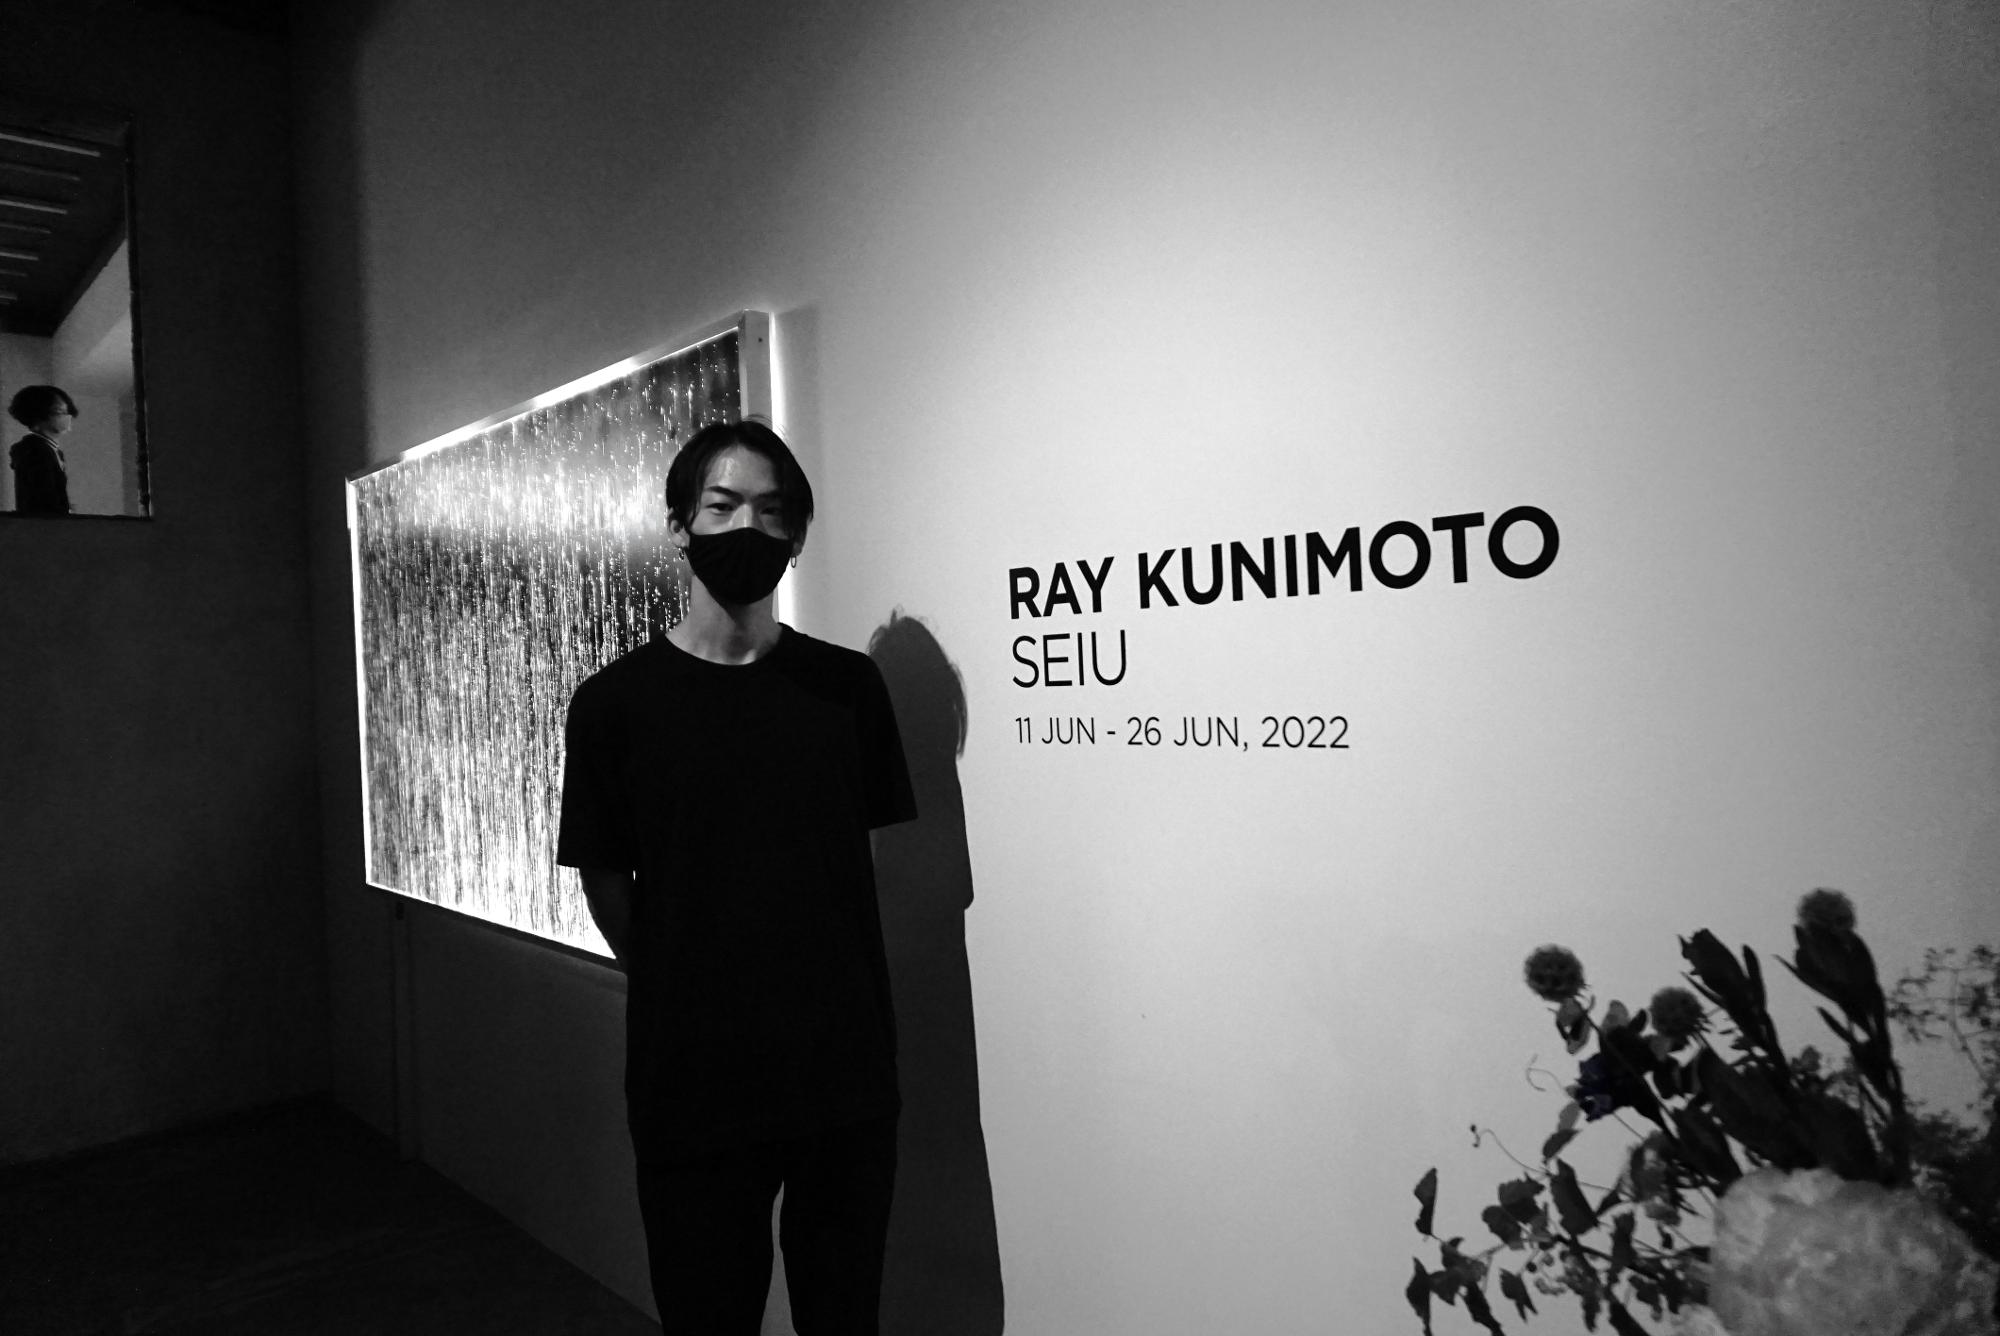 國本玲（Ray Kunimoto) 1991年NY出身、東京育ち。慶応義塾大学文学部美学美術史専攻卒業。2021年にNYより帰国。日本、アラブ首長国連邦、台湾、アメリカなど世界各地でサウンドインスタレーション作品やライブパフォーマンスを発表。